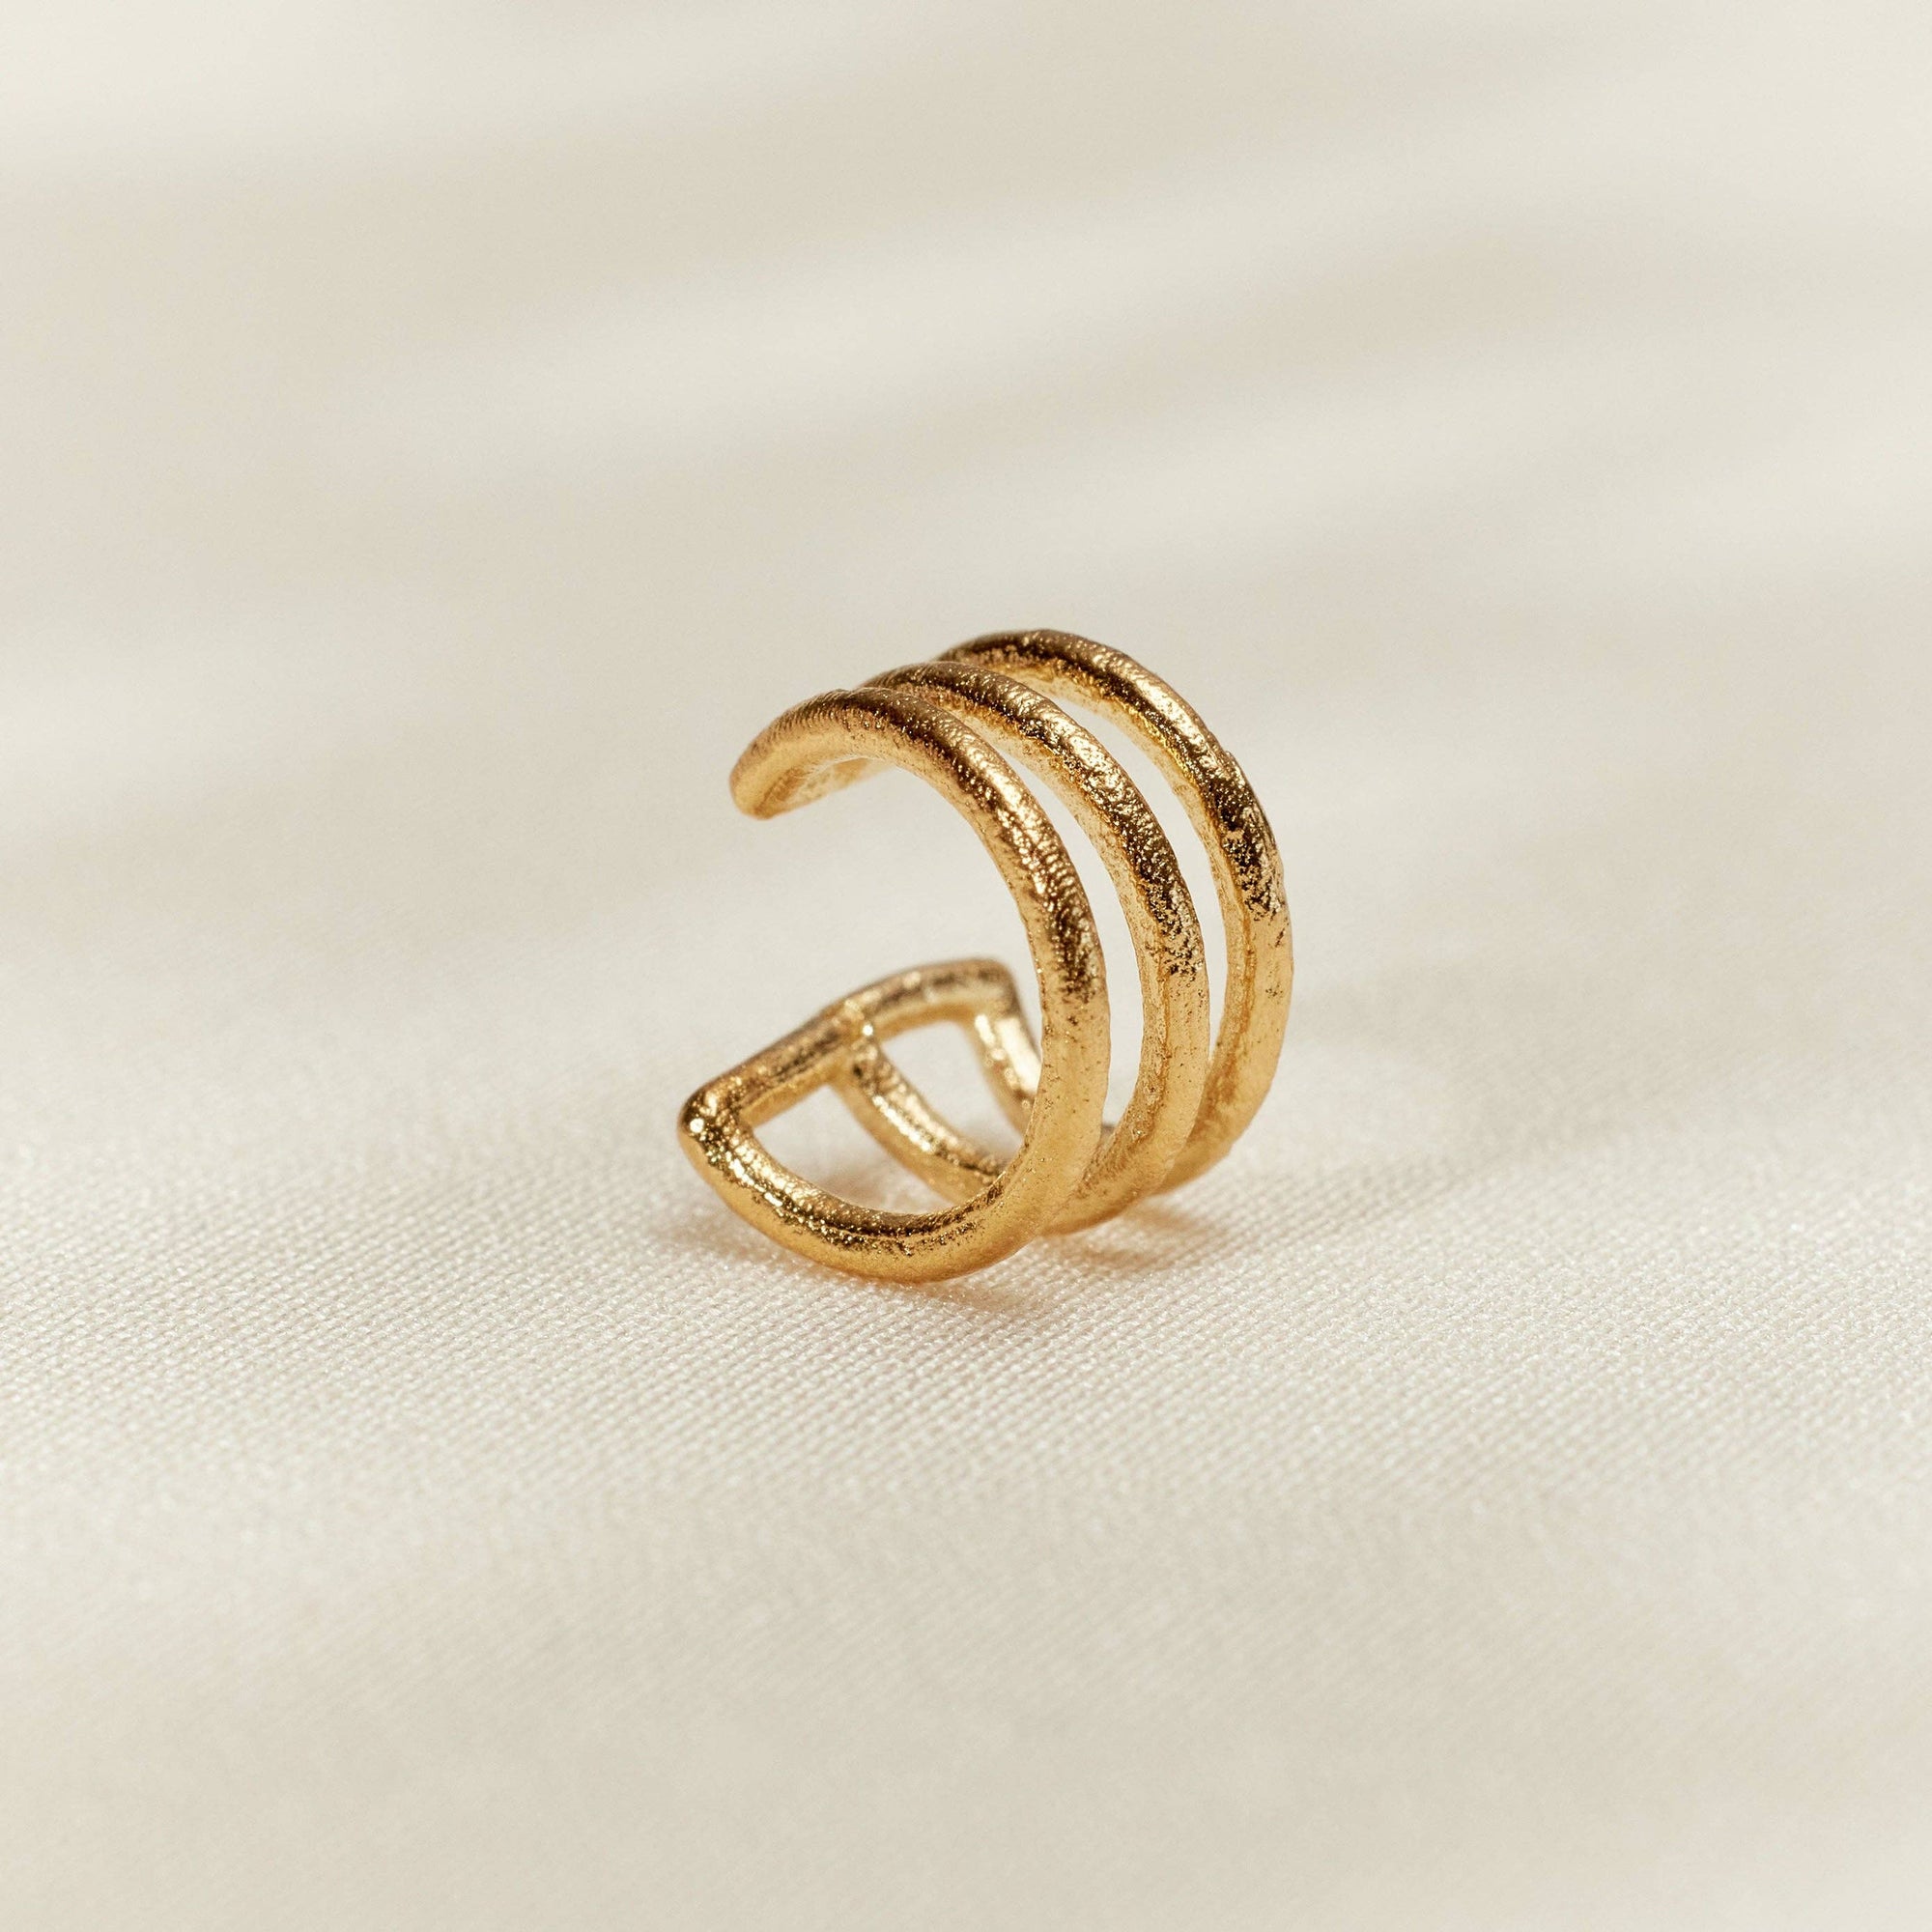 Lioré Ear Cuff | Jewelry Gold Gift Waterproof